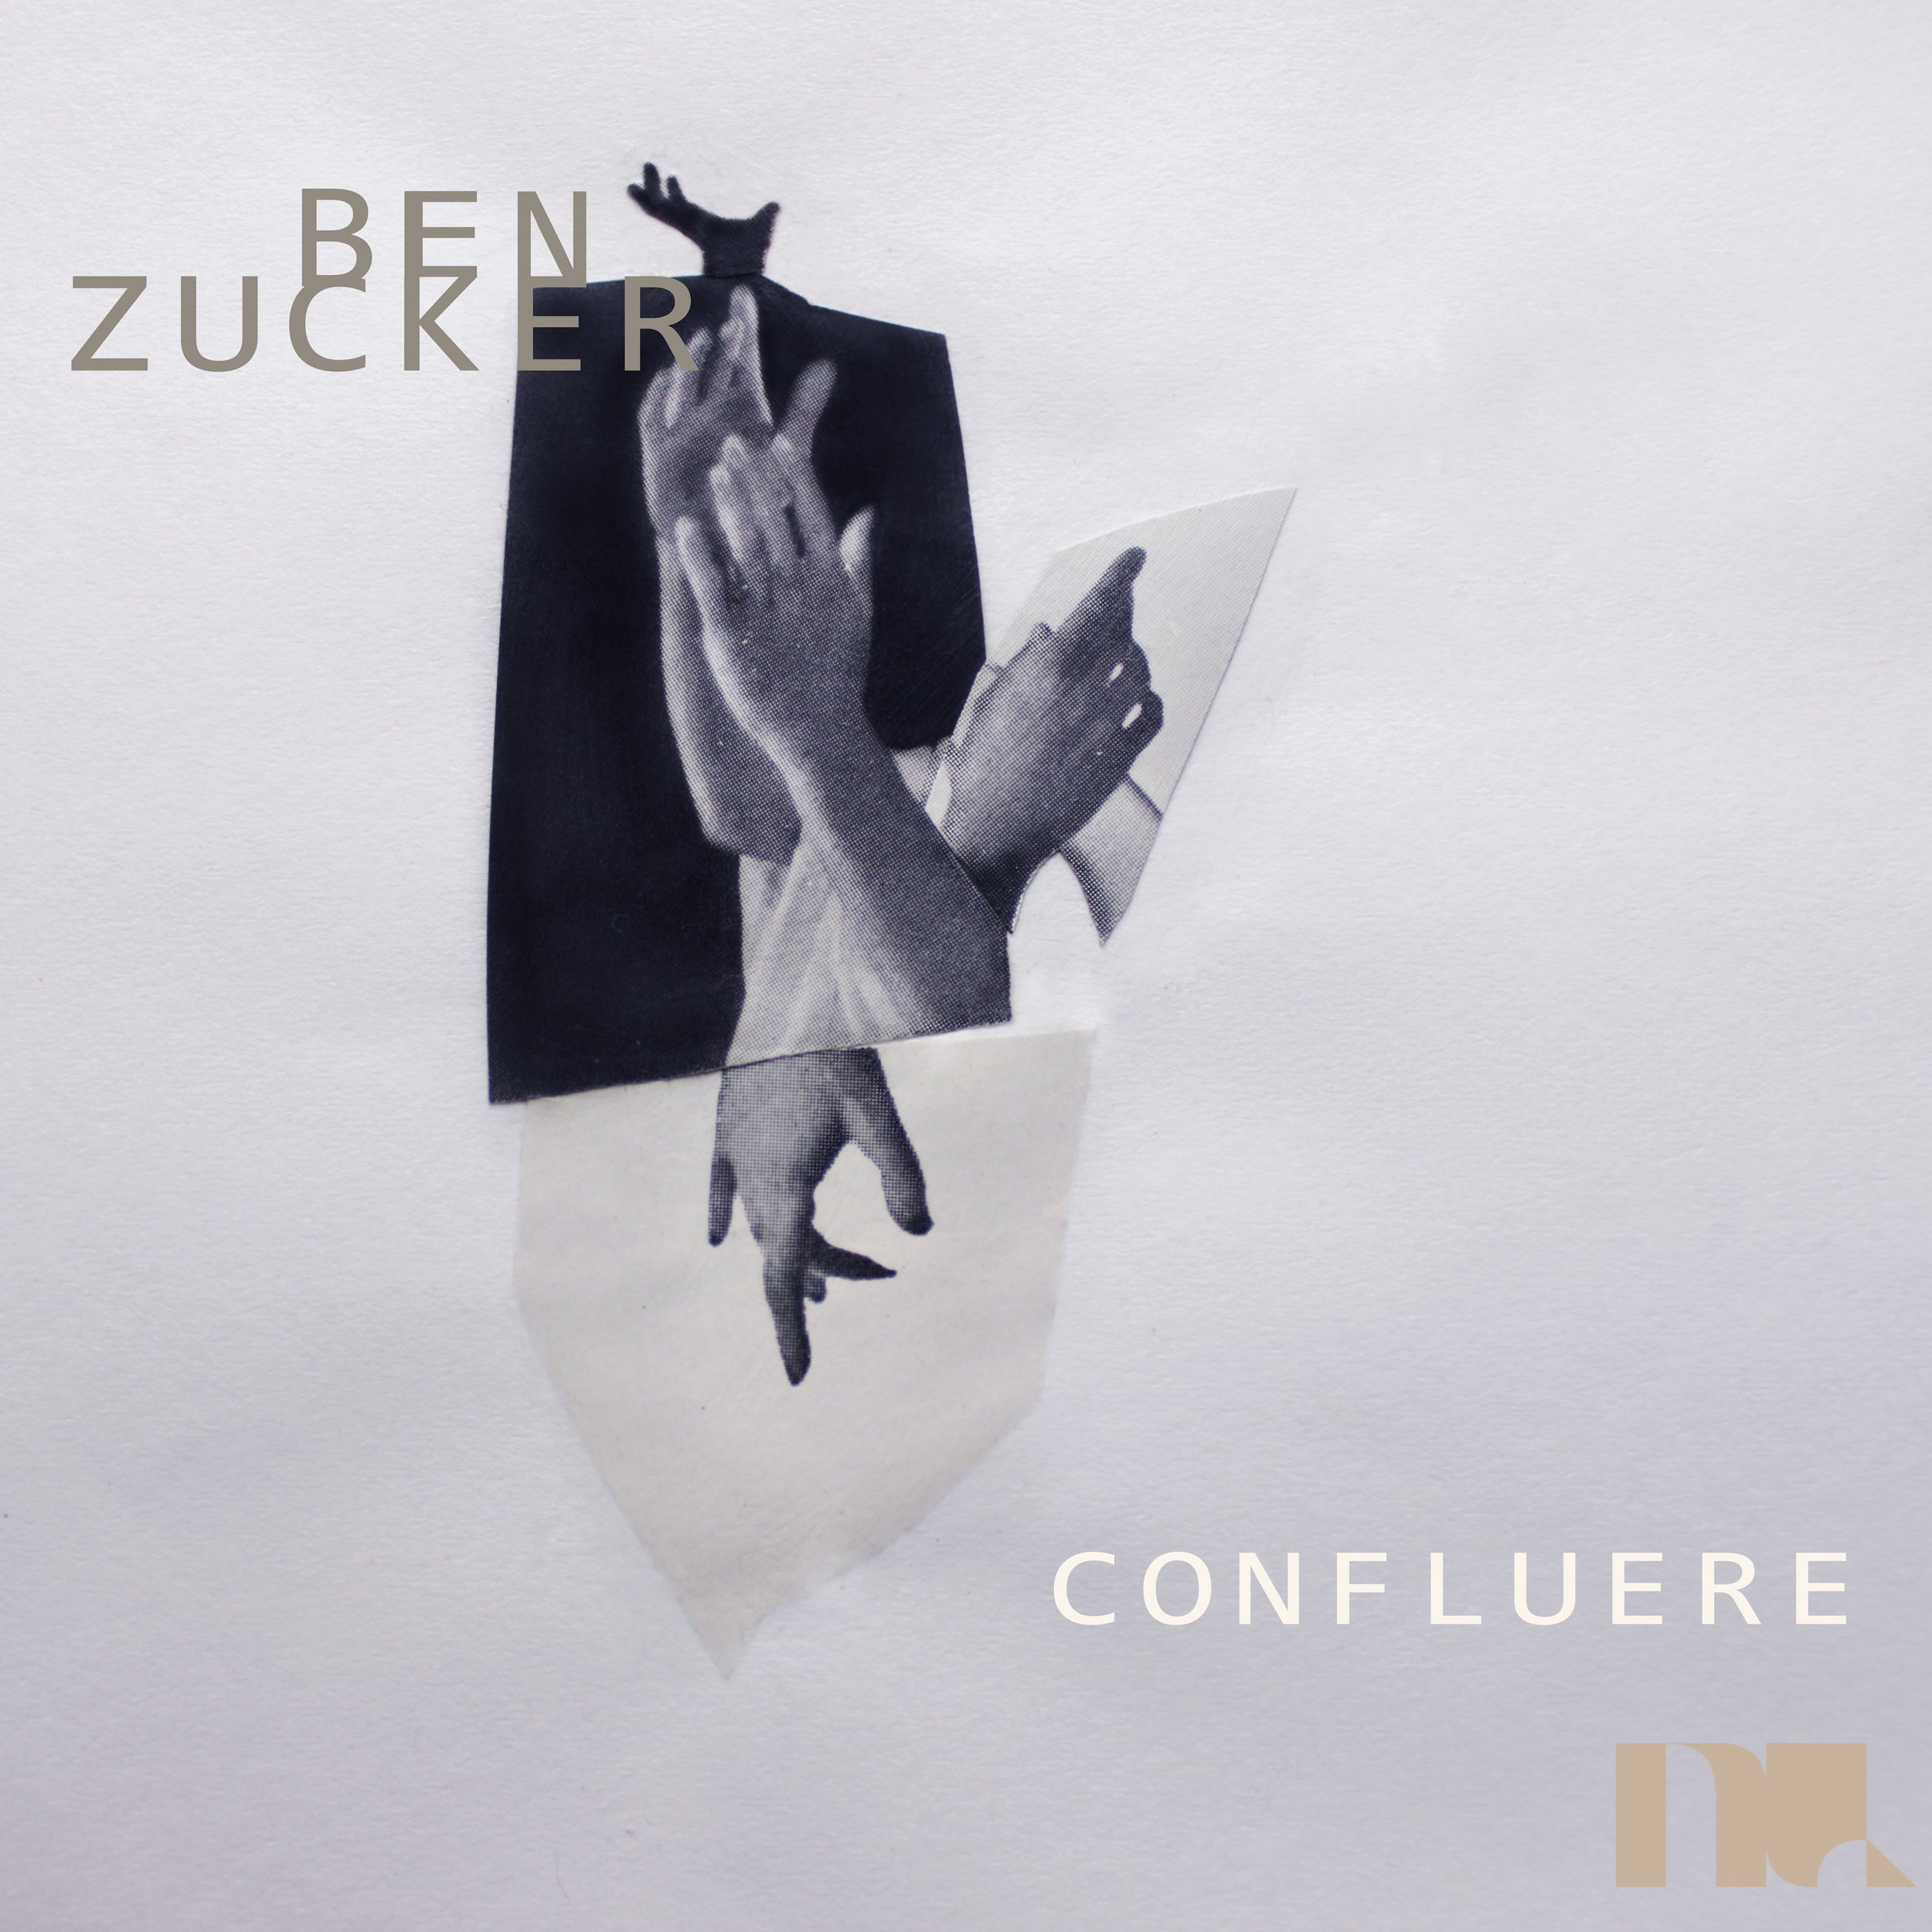 Ben Zucker - Confluere